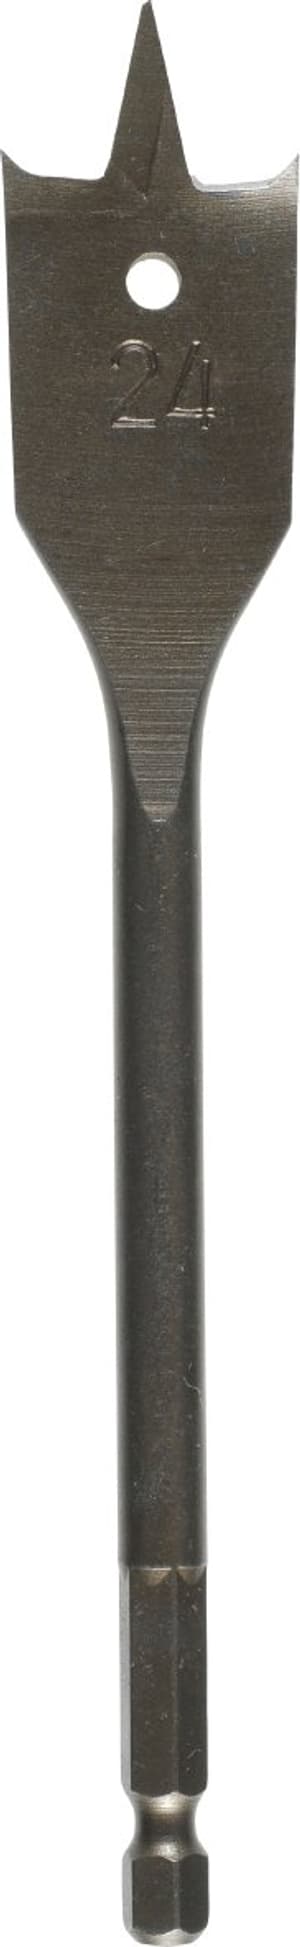 Flachfräsbohrer, ø 14 mm